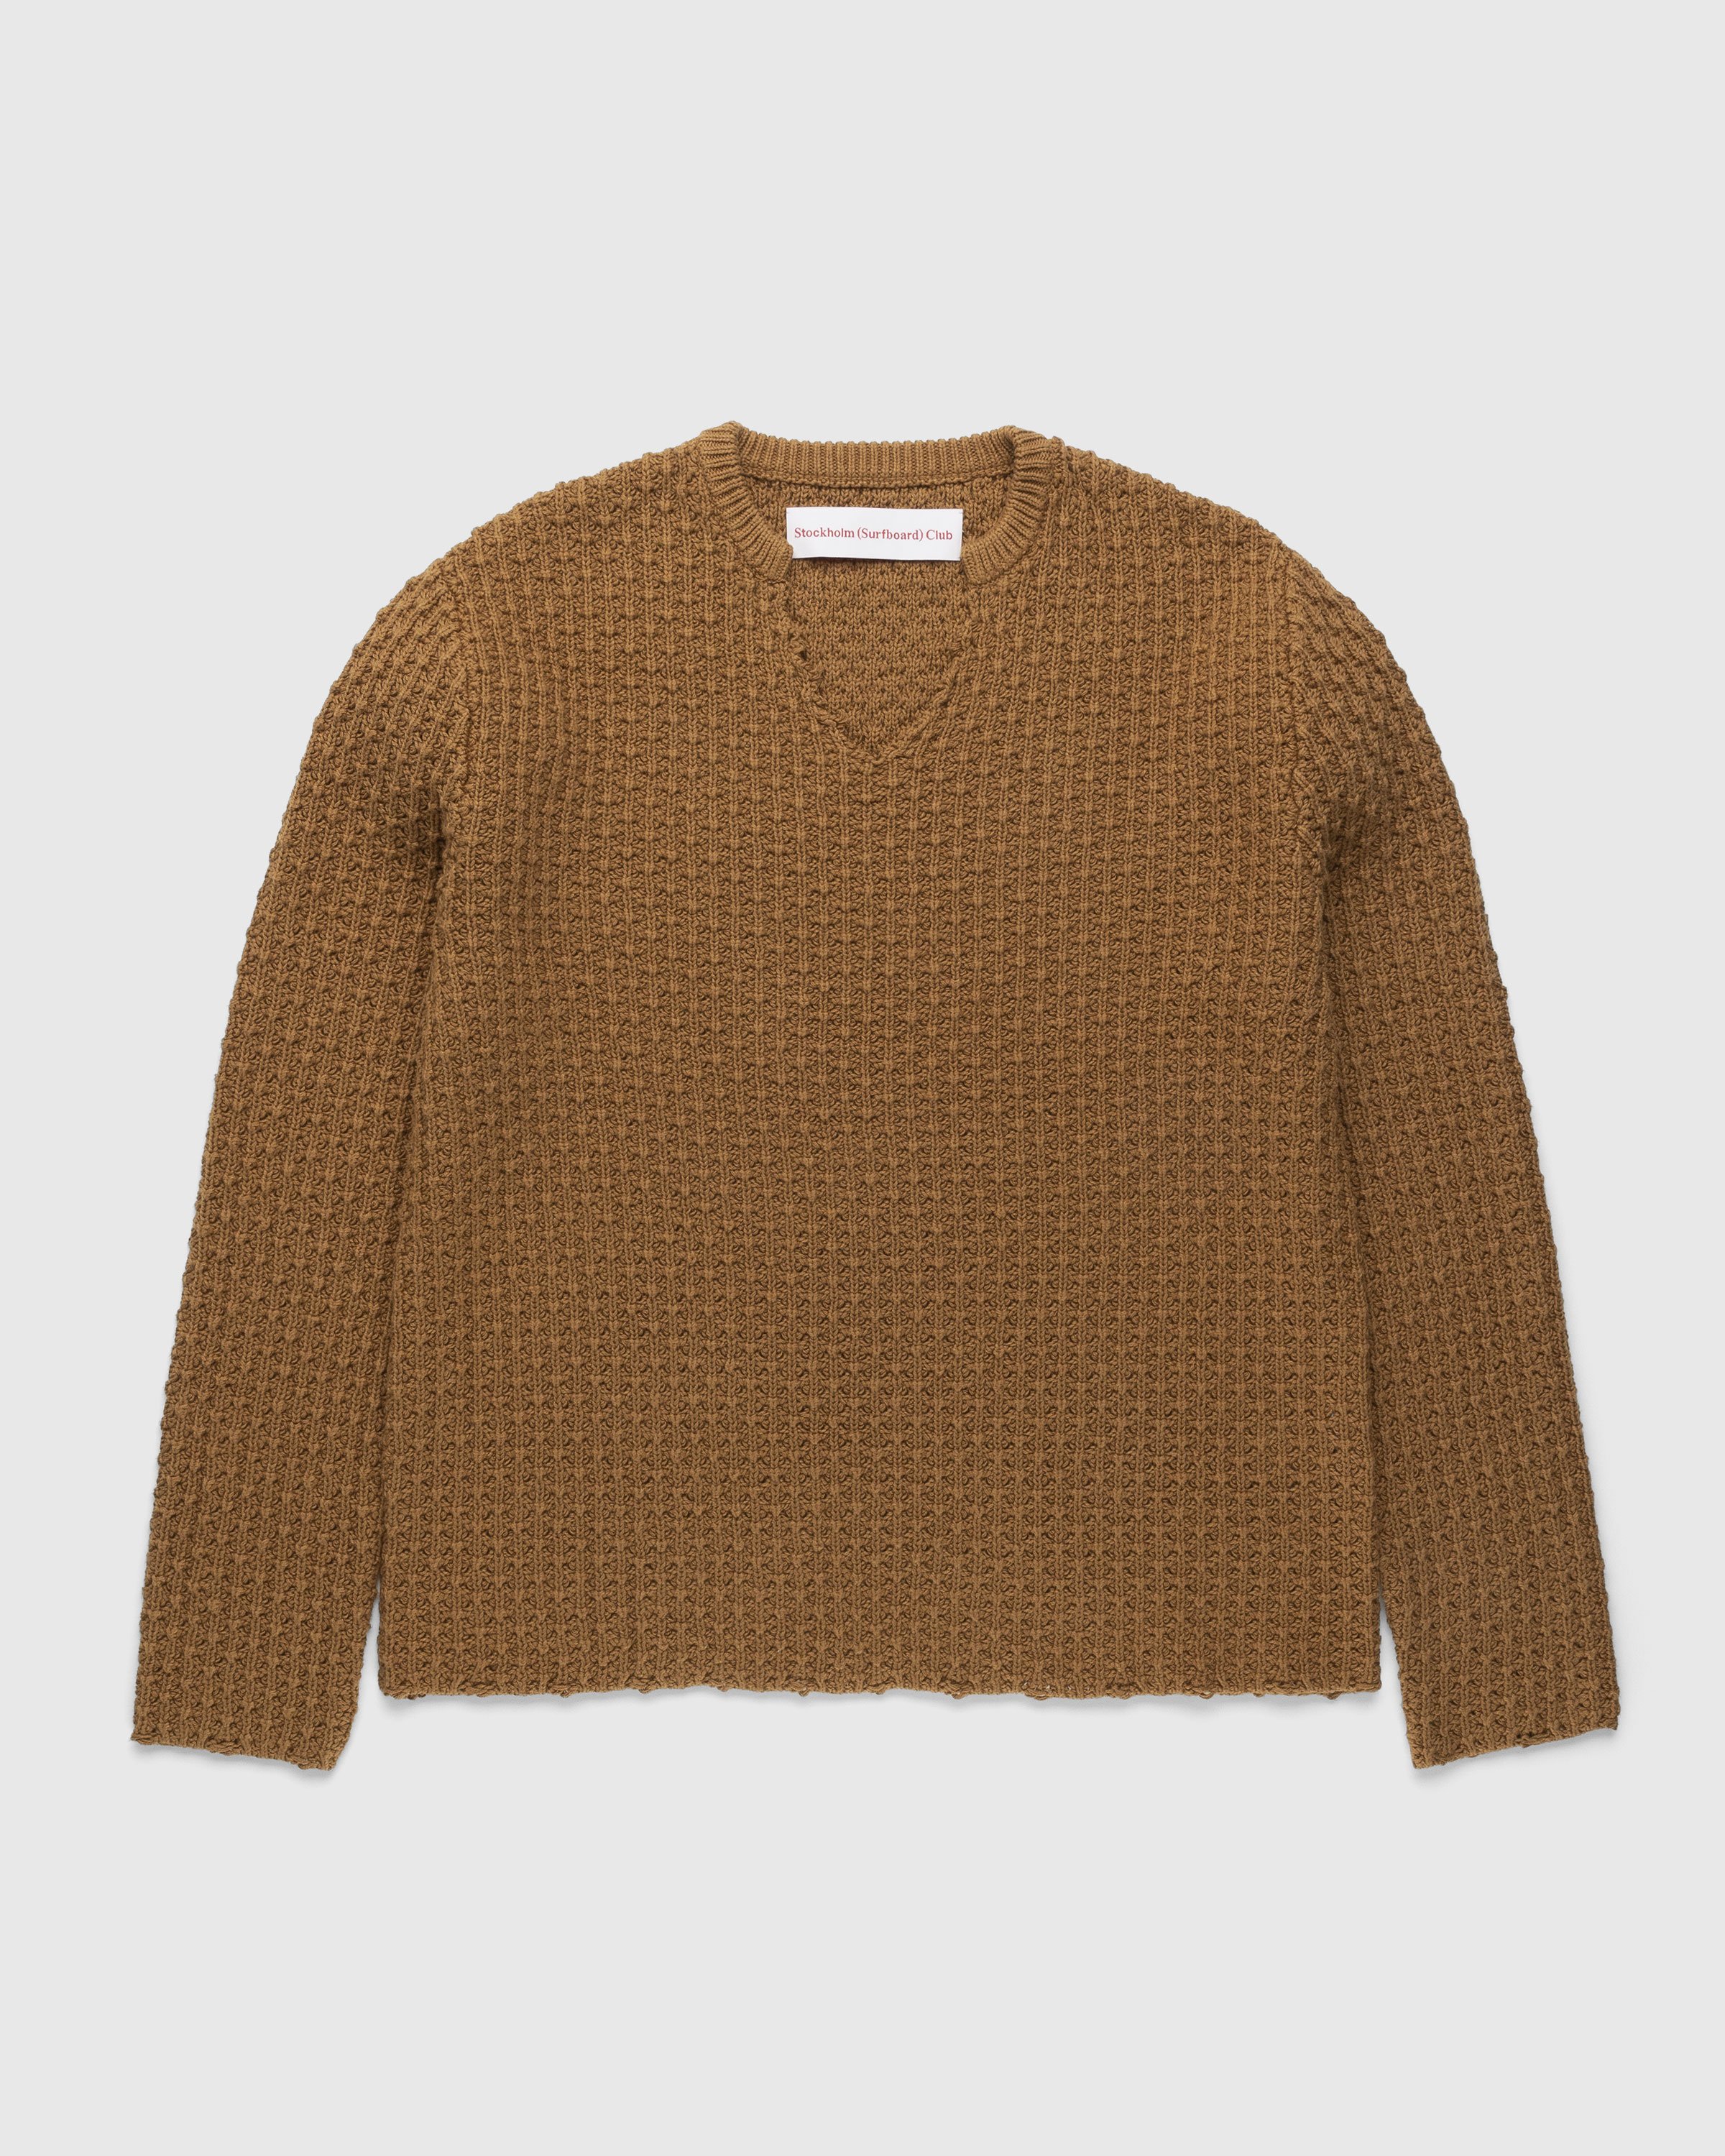 Stockholm Surfboard Club - Knit V-Neck Sweater Cedar - Clothing - Orange - Image 1